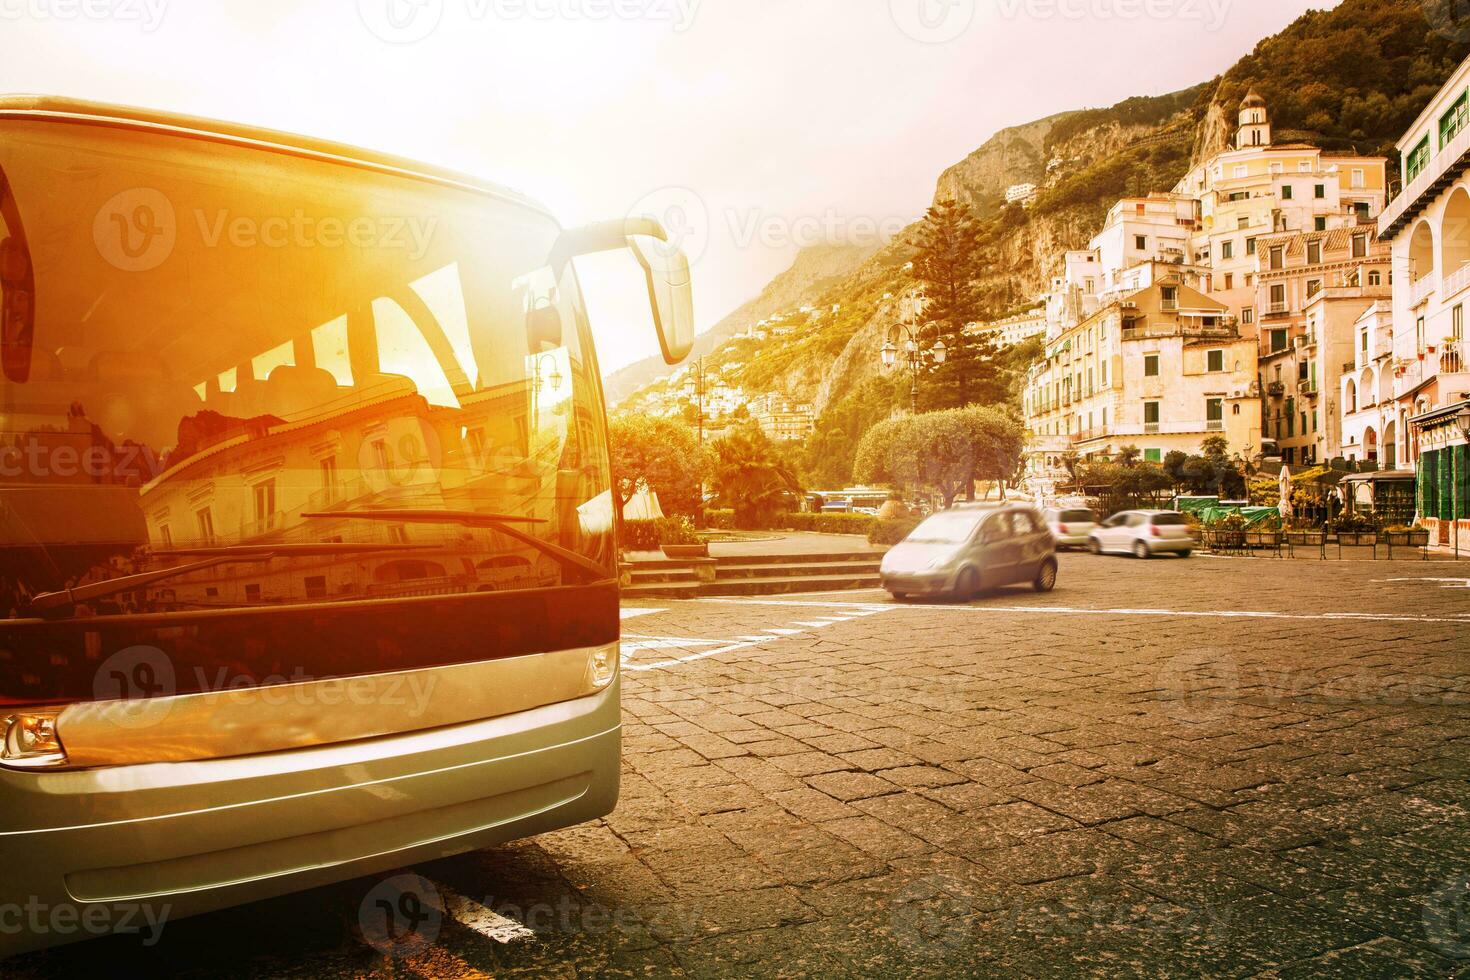 toerist bus parkeren Aan stad- plein van amalfi kust meest populair reizen bestemming in zuiden Italië foto